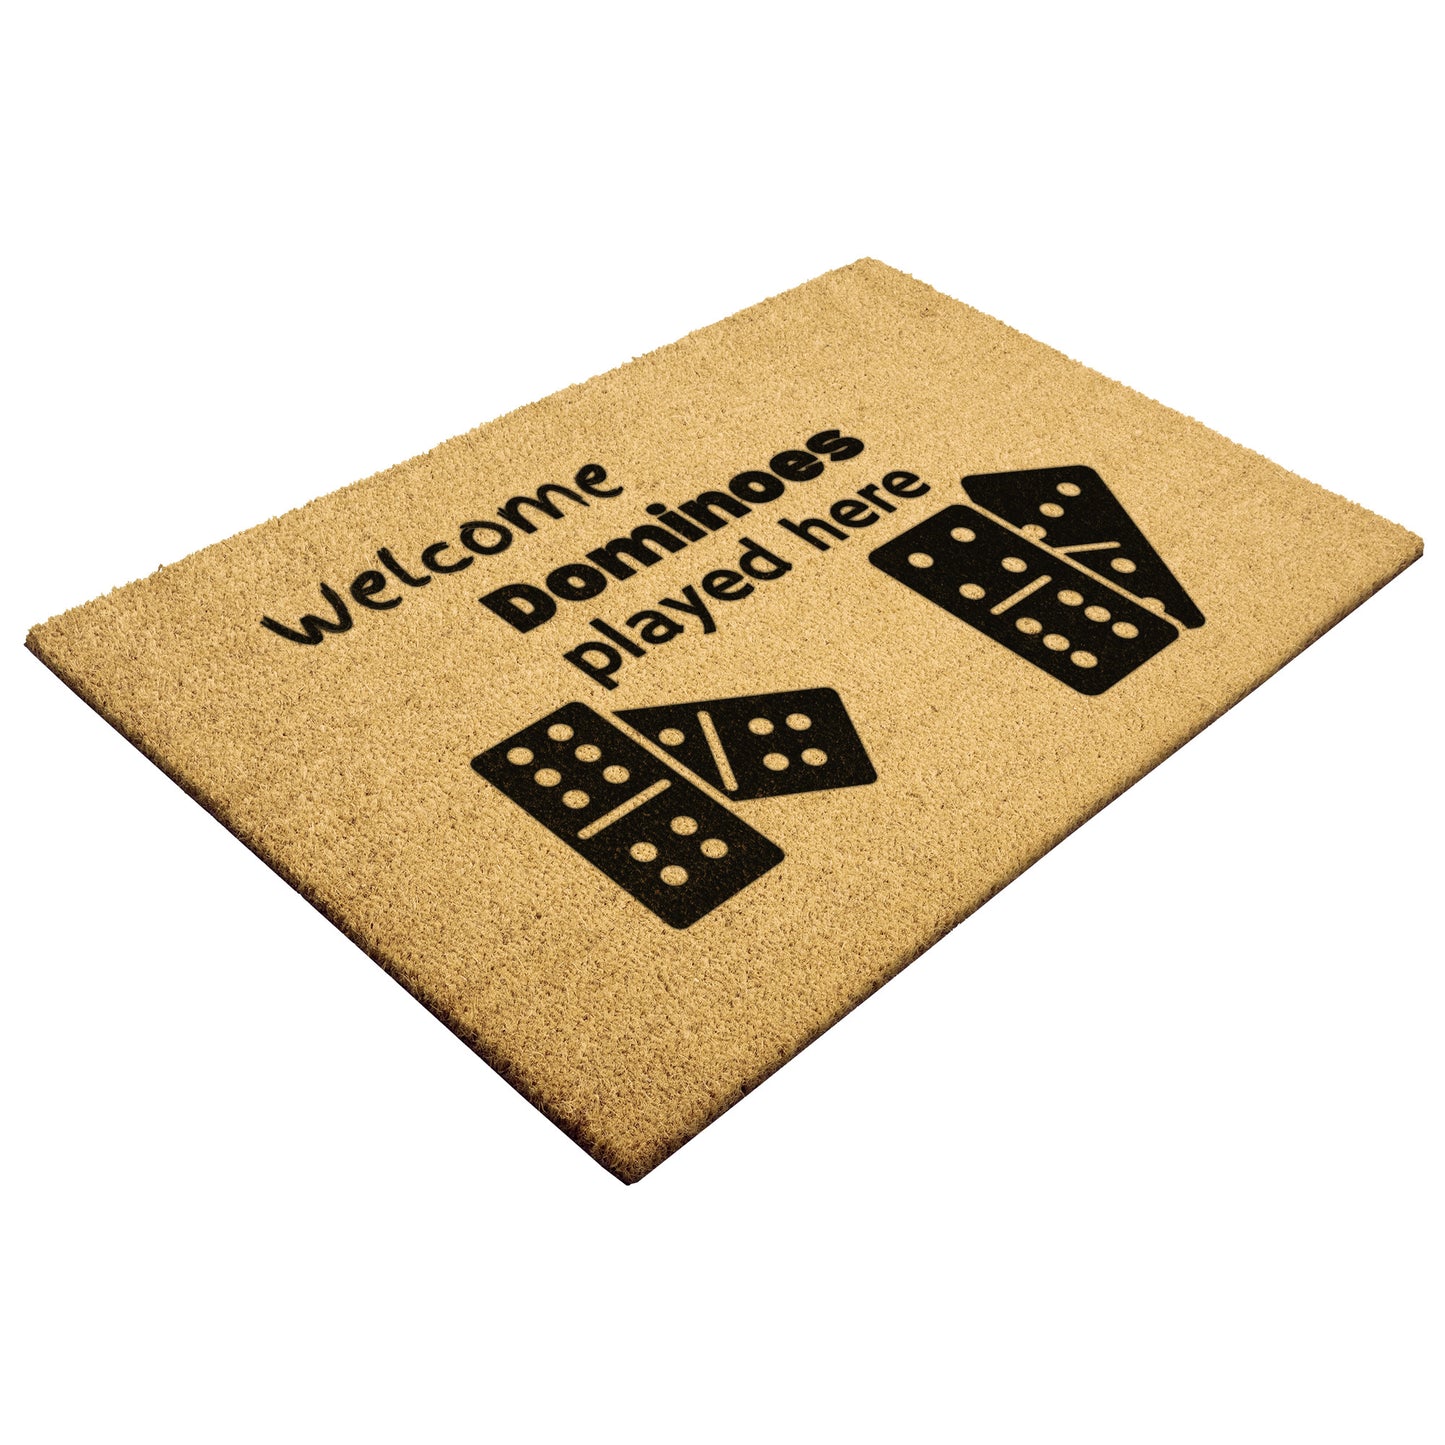 Dominoes Doormat • Entry Way Doormat • Welcome Doormat • Natural Coco Doormat